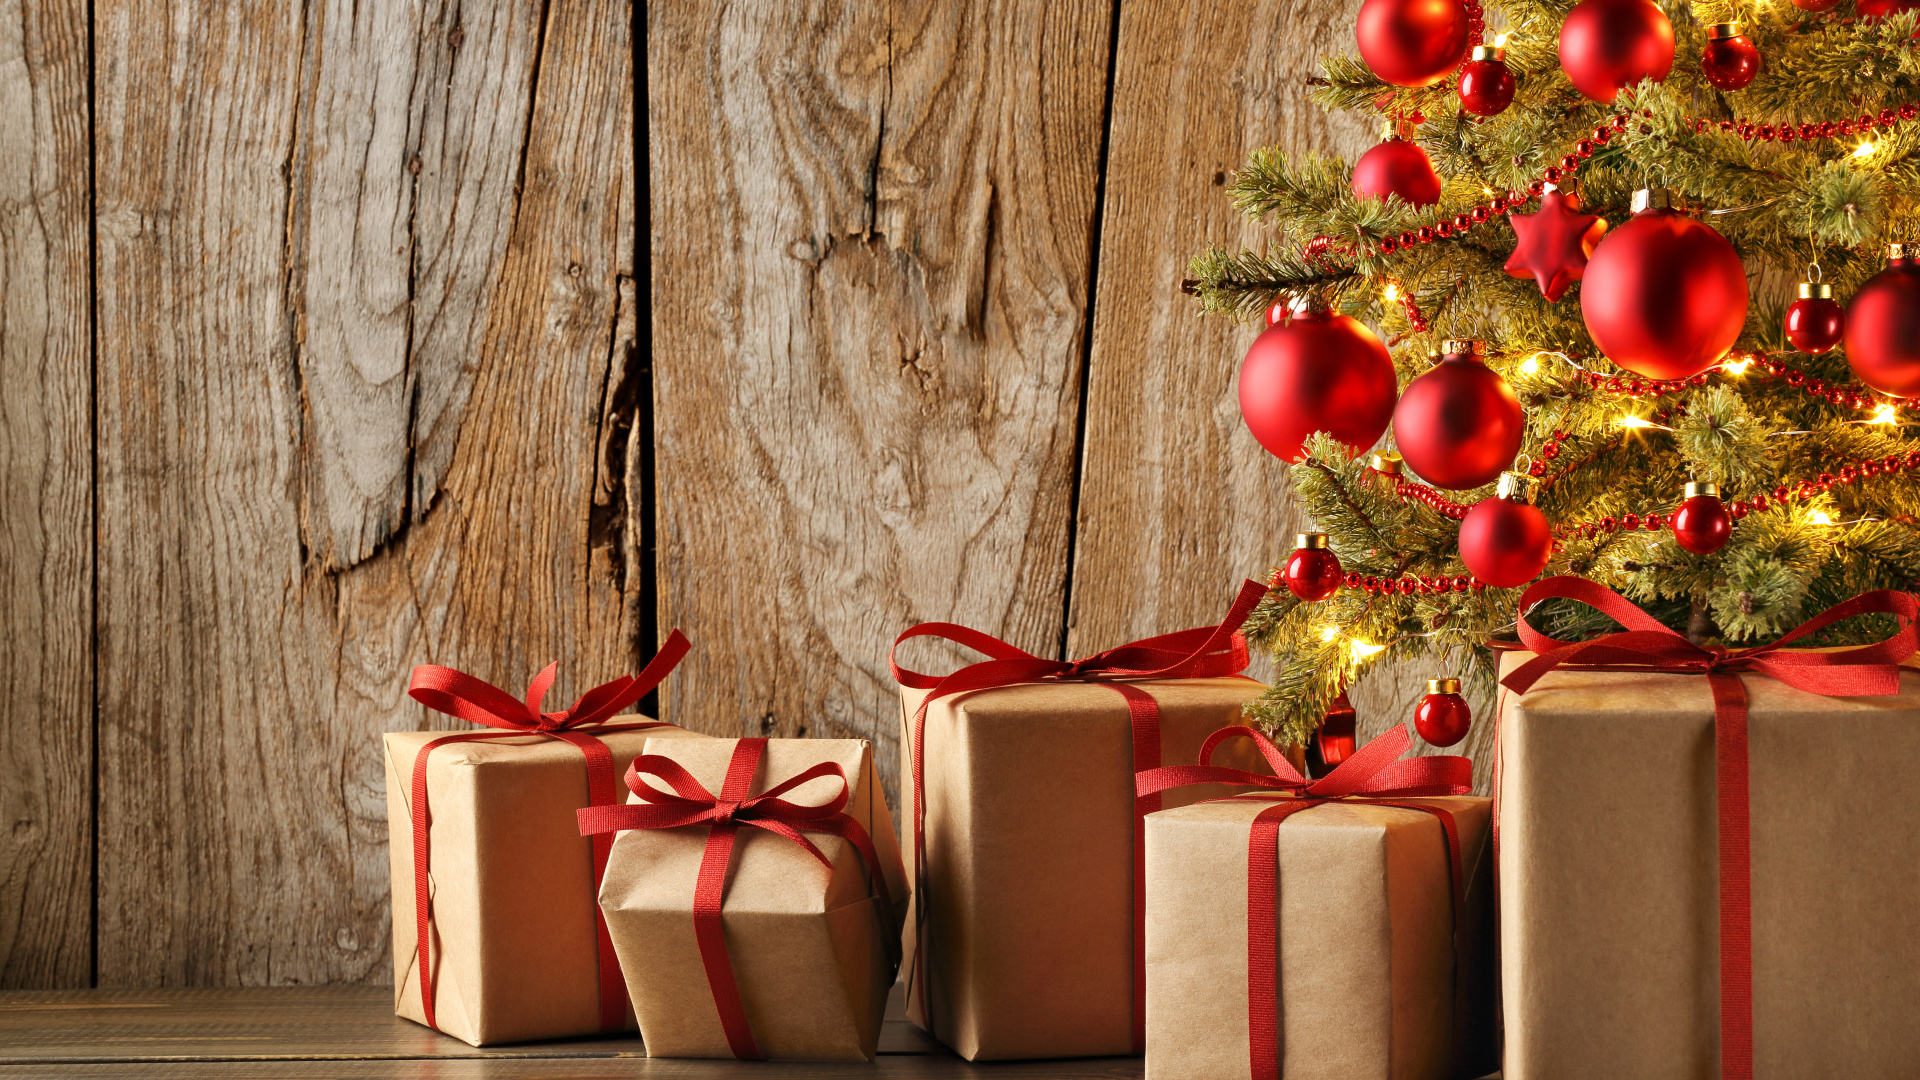 圣诞节那天, 礼物, 圣诞节的装饰品, 礼品包装, 新的一年 壁纸 1920x1080 允许